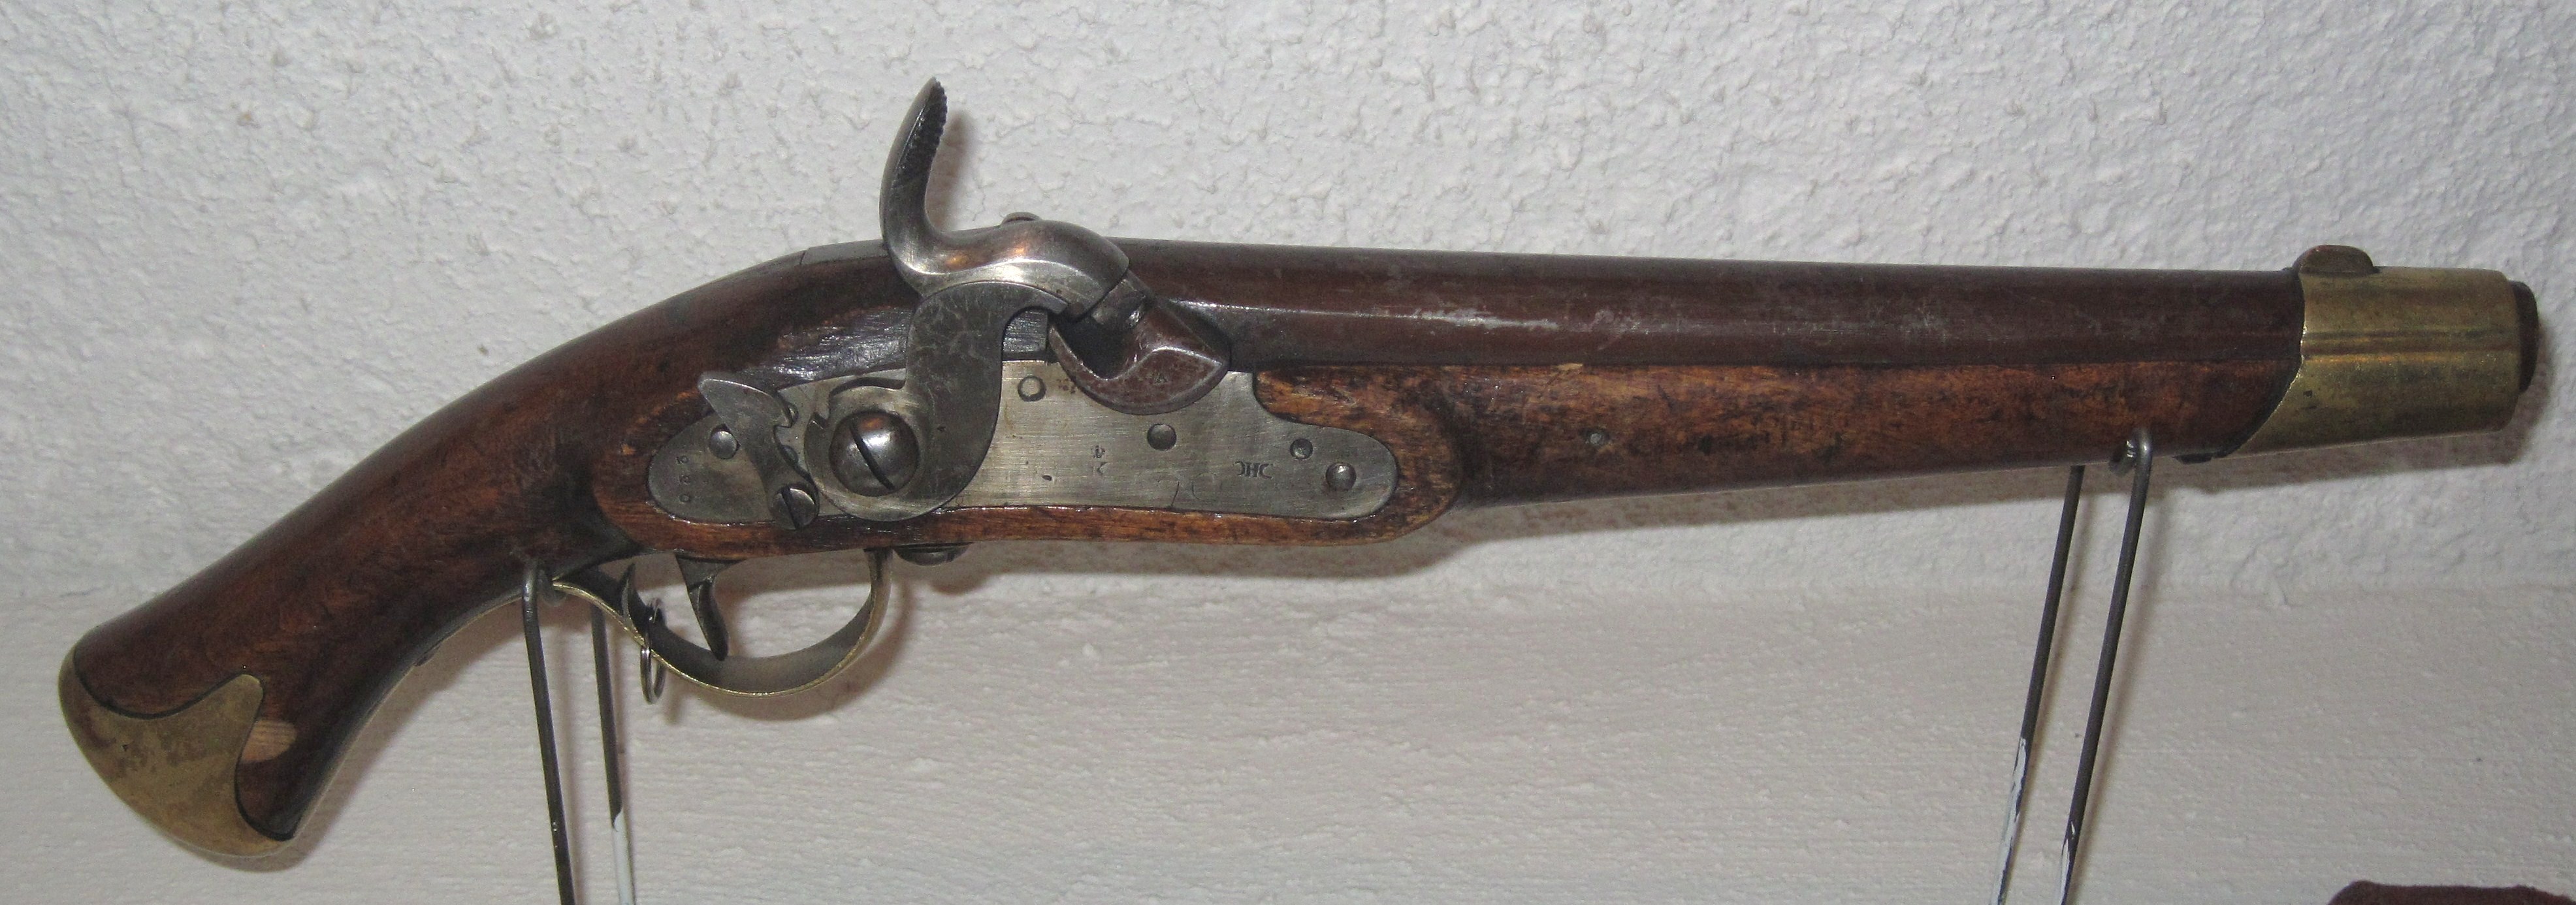 ./guns/pistol/bilder/Pistol-Kongsberg-M1835-46-220-1.JPG